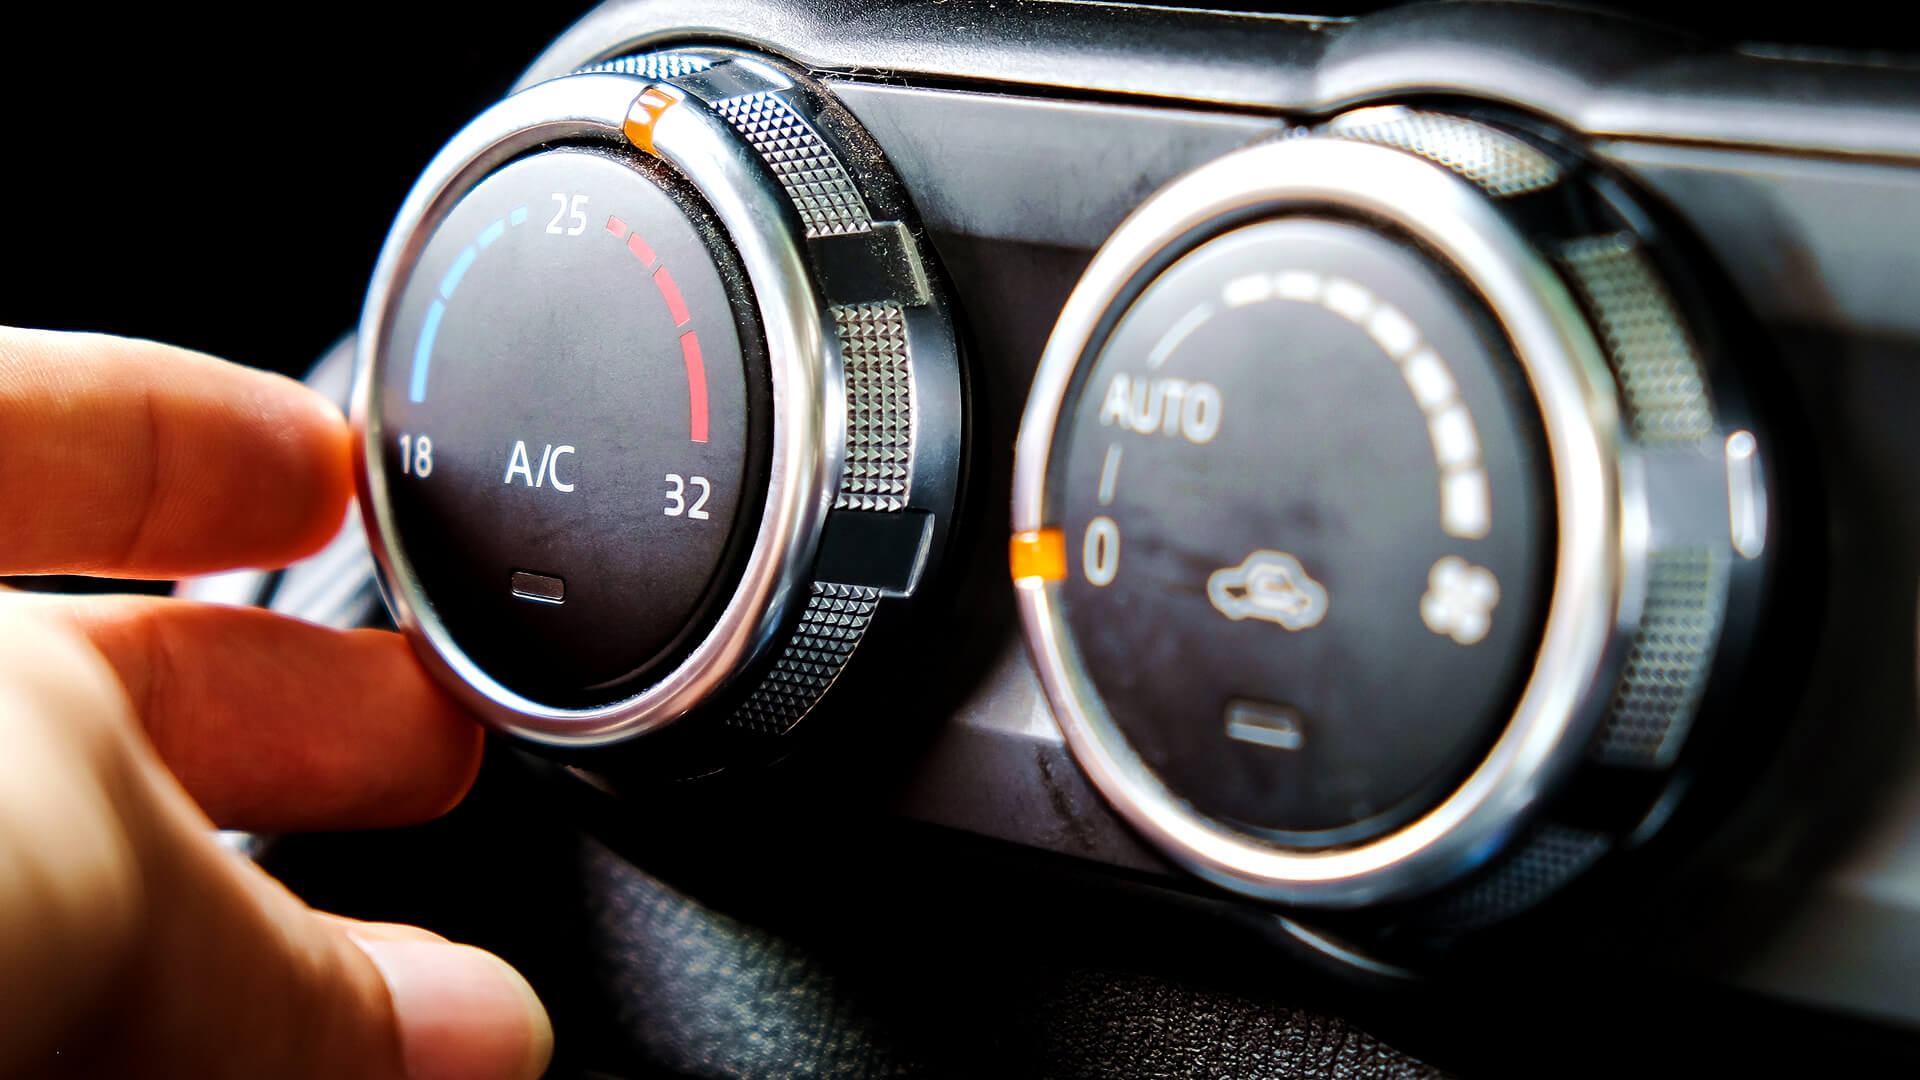 Lekker als je zelf de temperatuur in de auto kunt bepalen!